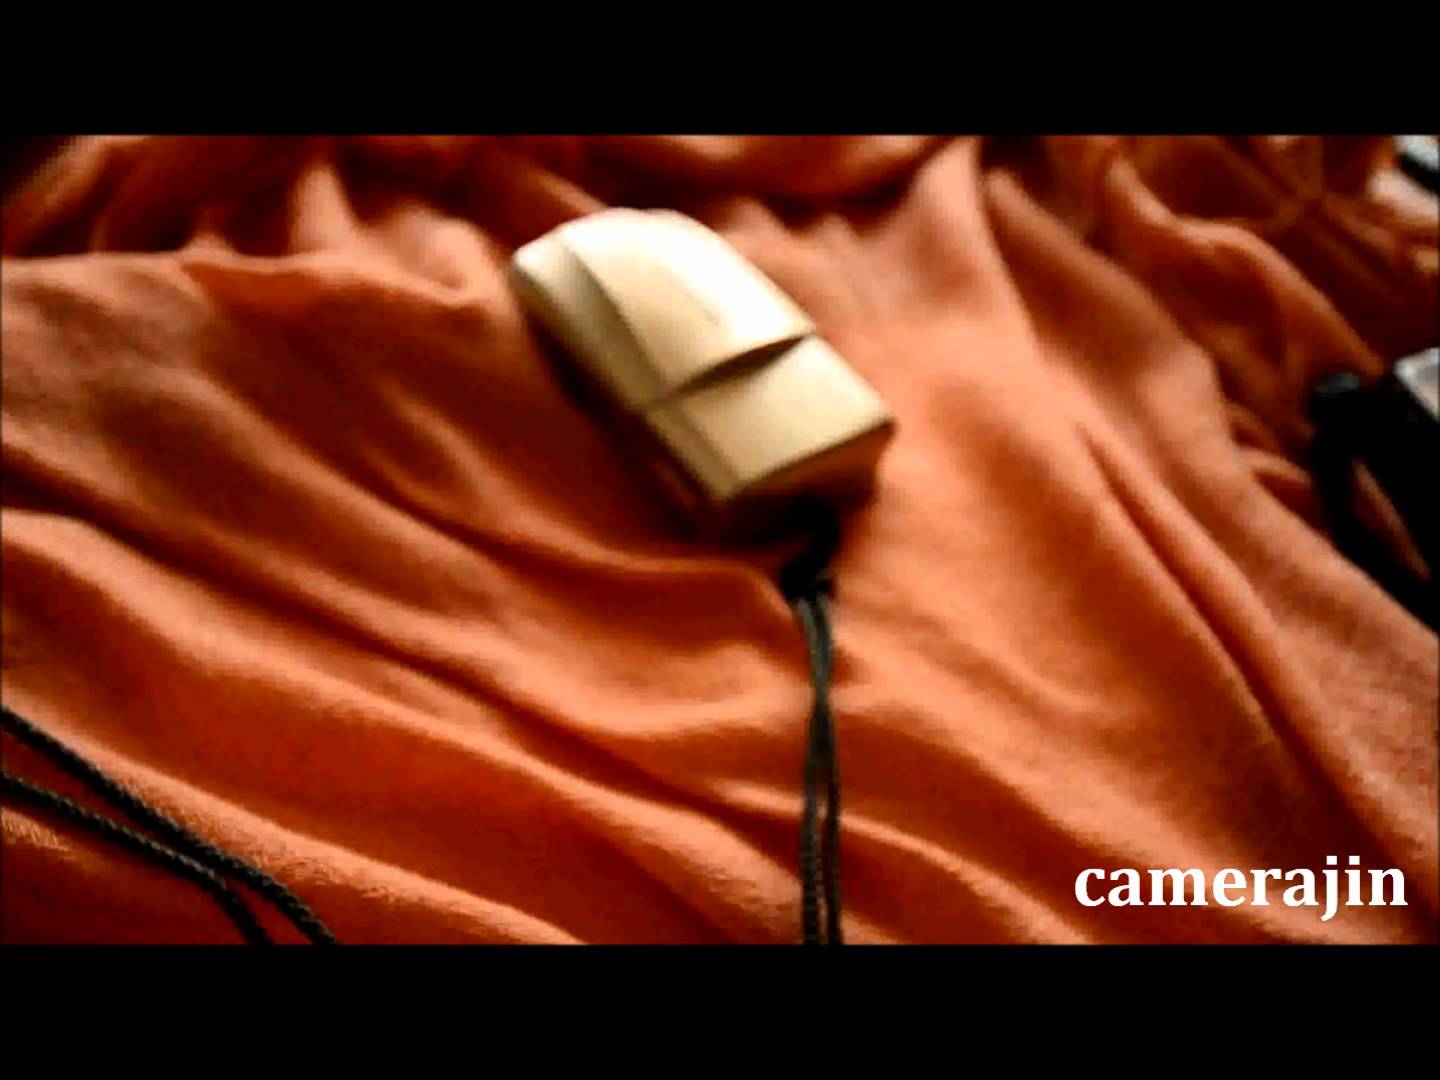 camerajin ep 35 – Olympus Compact Film Cameras